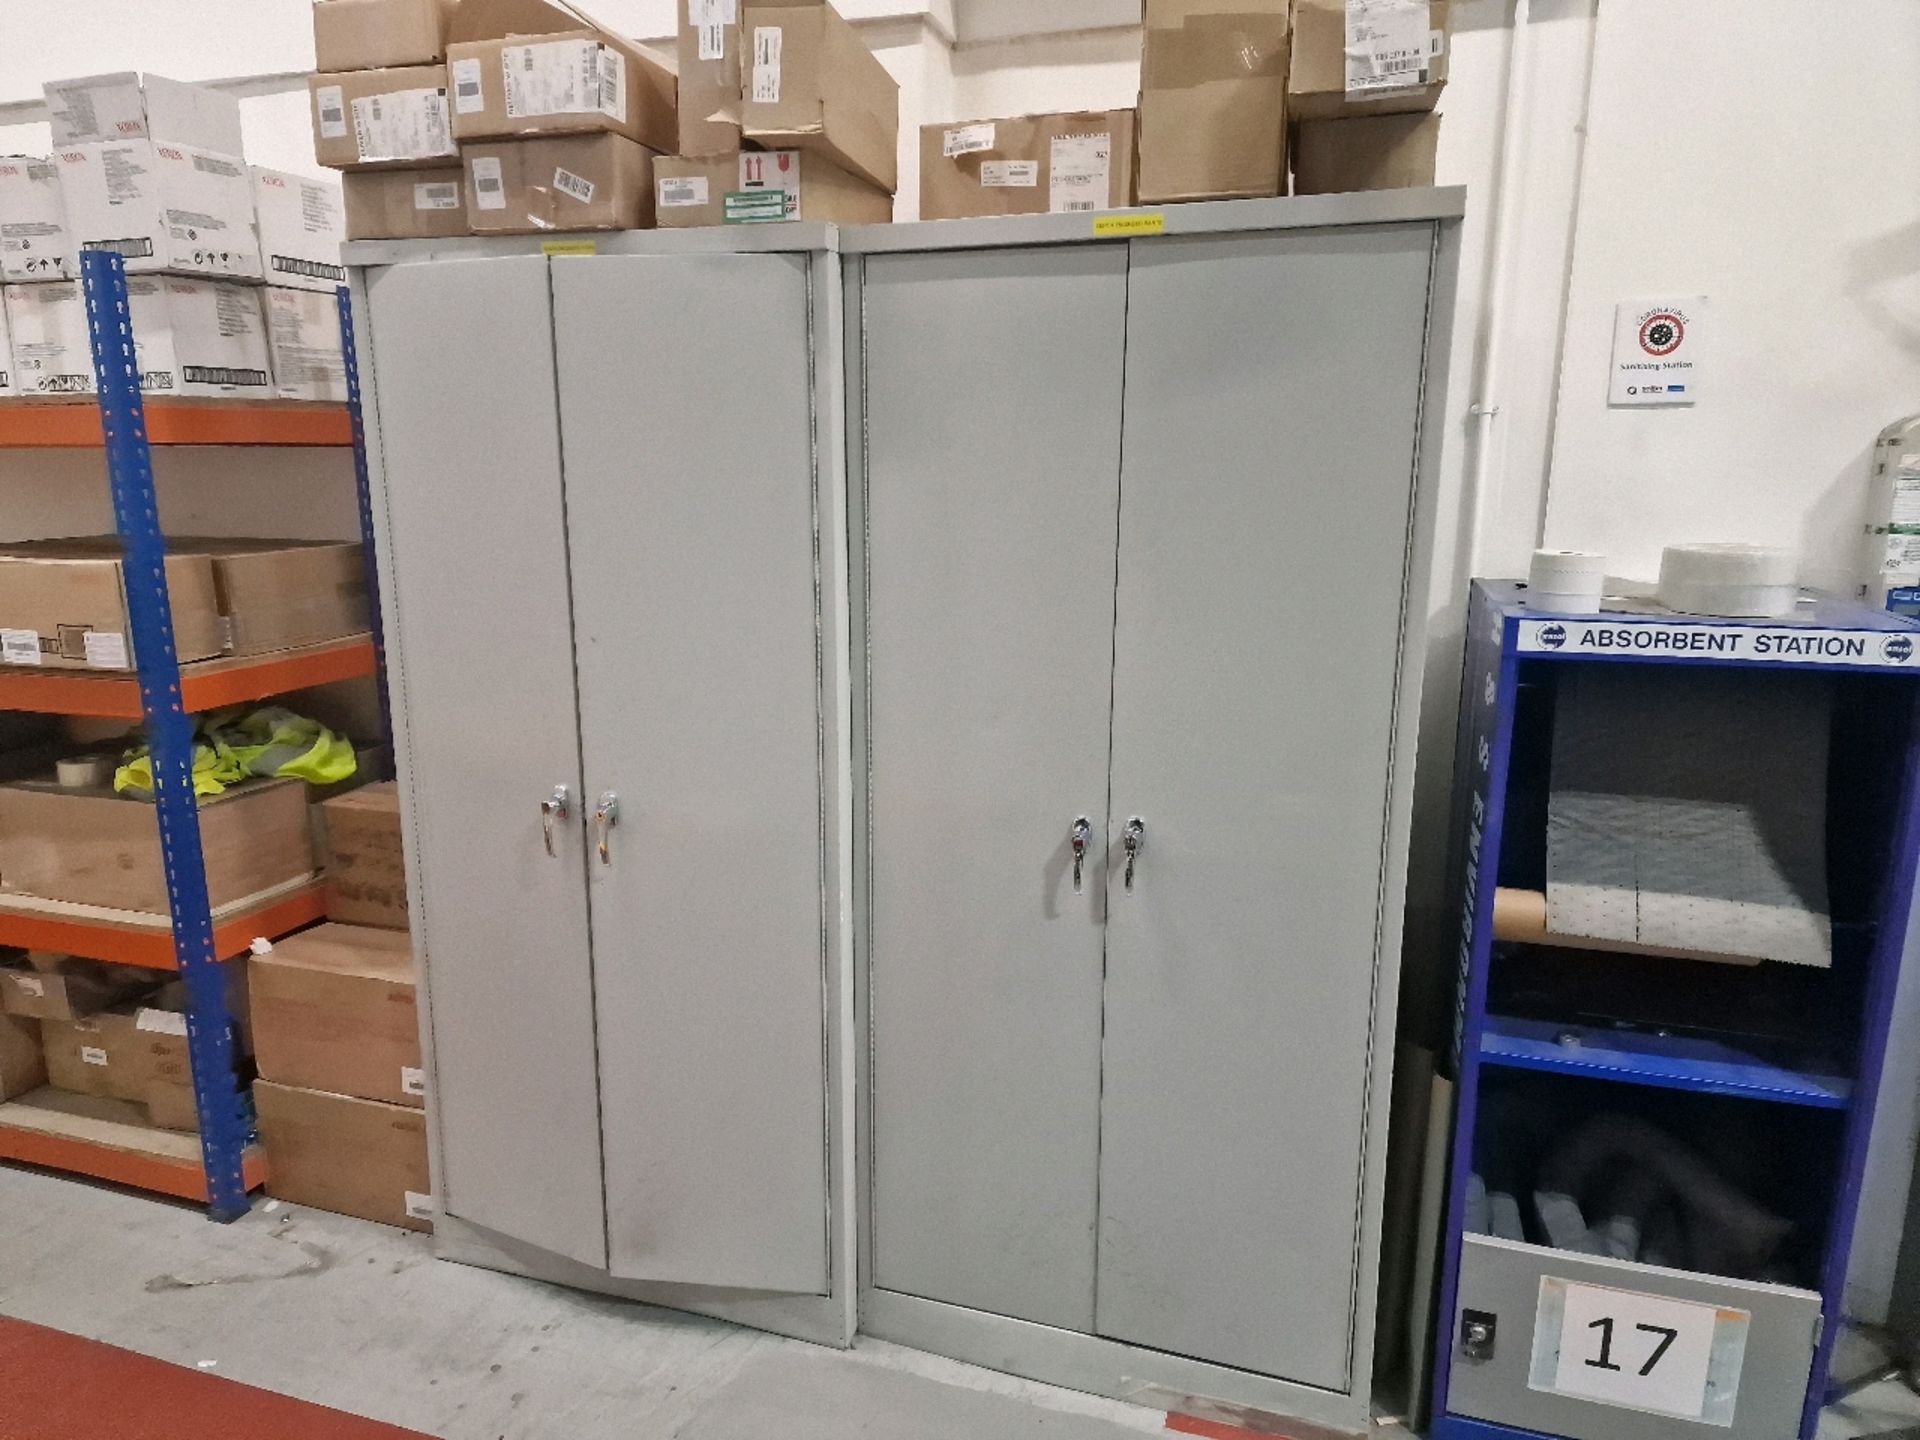 Steel Storage Cabinets x2